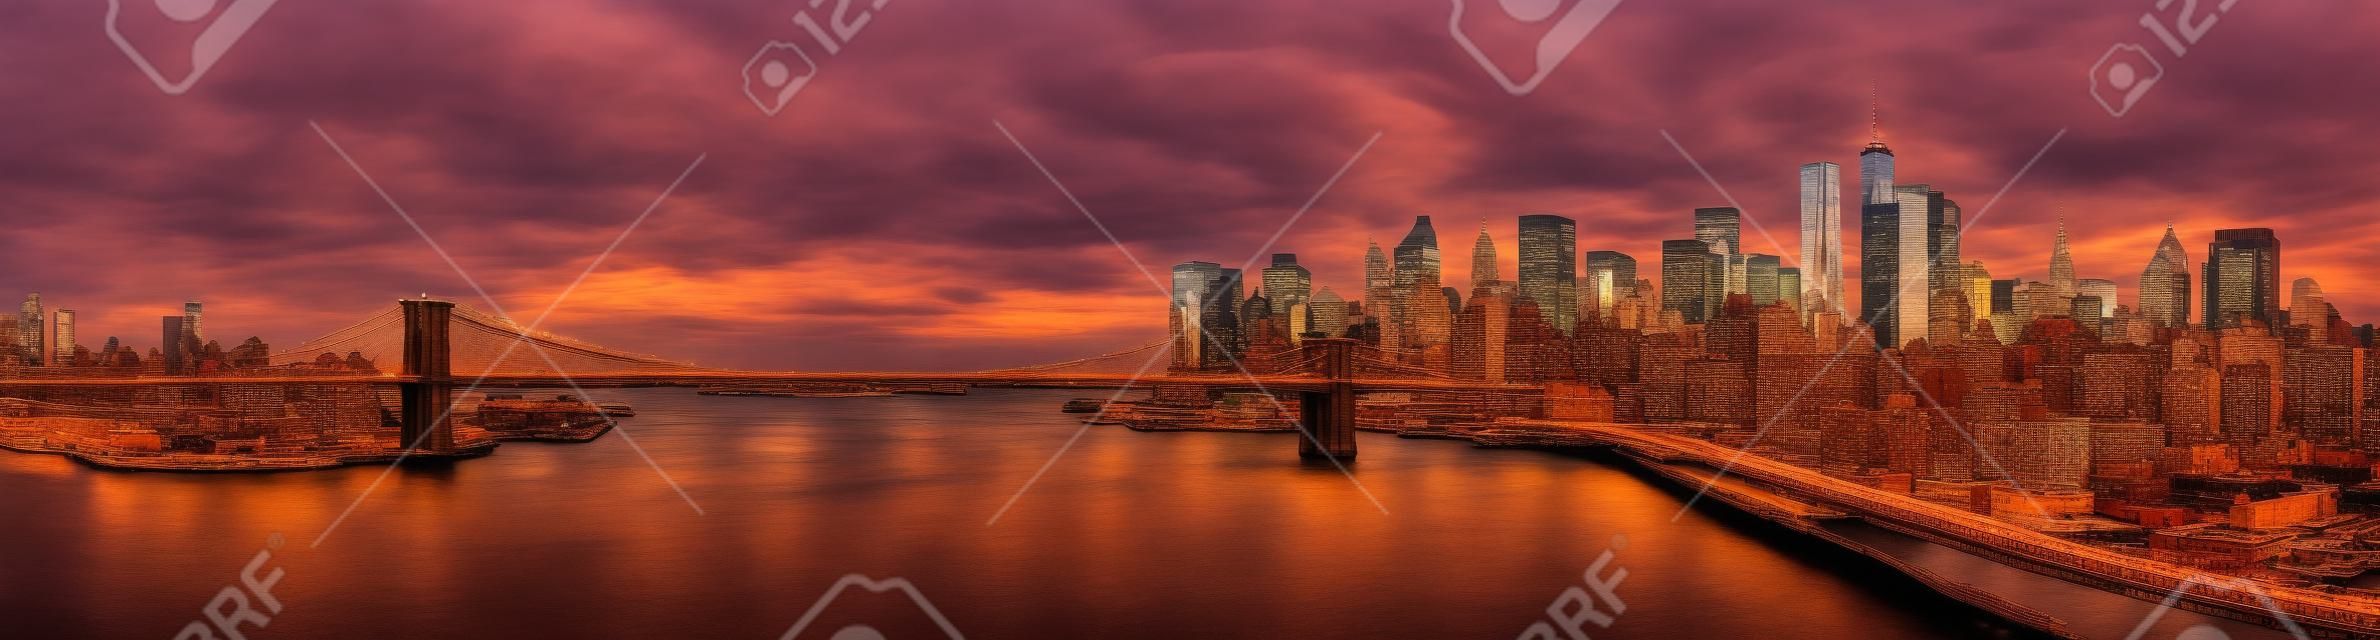 Puente de Brooklyn panorama al atardecer. El hito icónico extiende entre Brooklyn y el horizonte de Nueva York Distrito financiero, dominado por la Torre de la Libertad.